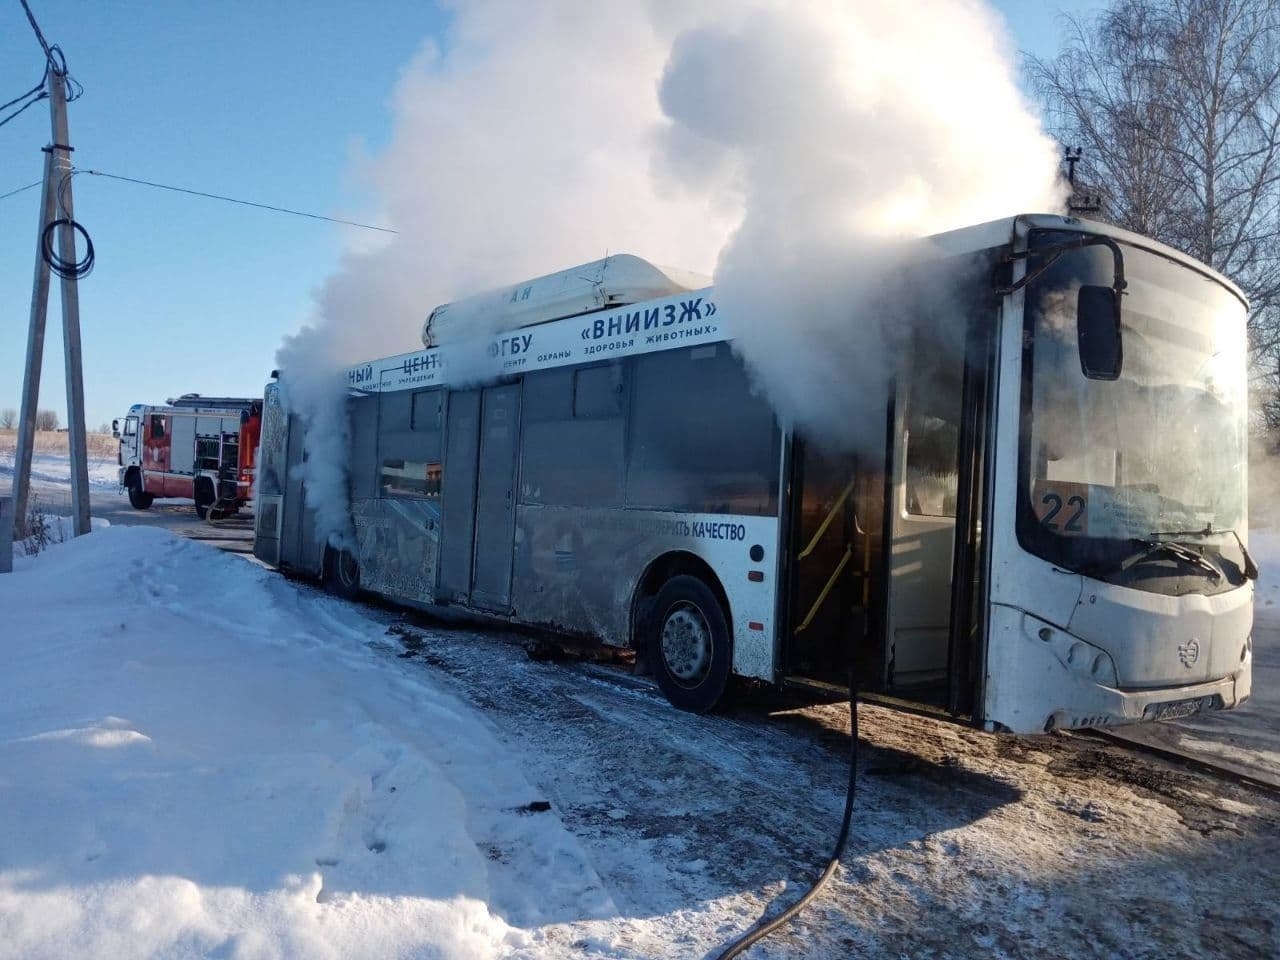 Пассажирский автобус горел во Владимире, пострадавших нет - МЧС